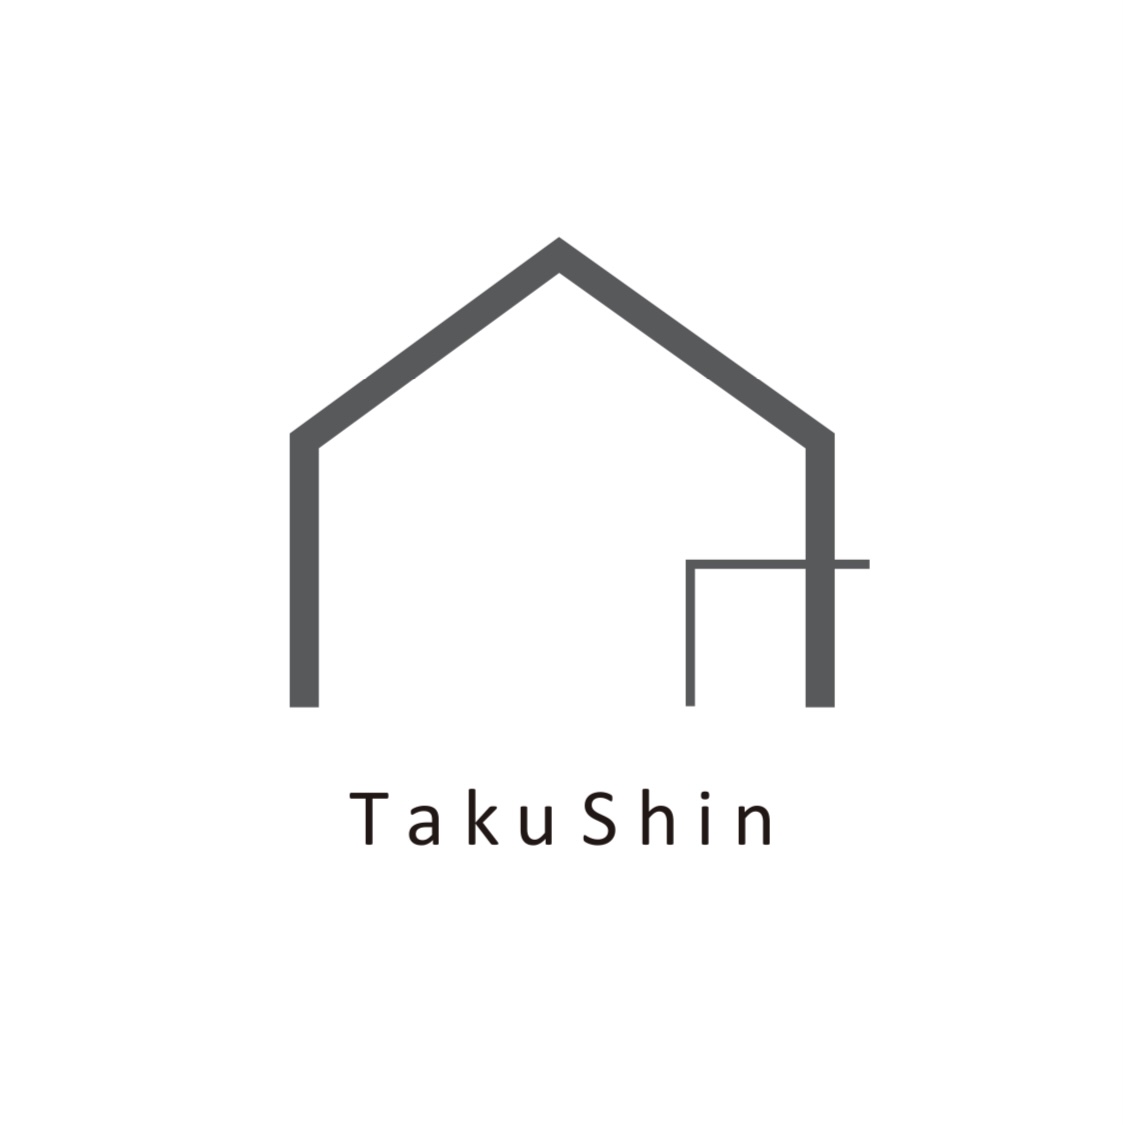 株式会社 TakuShin